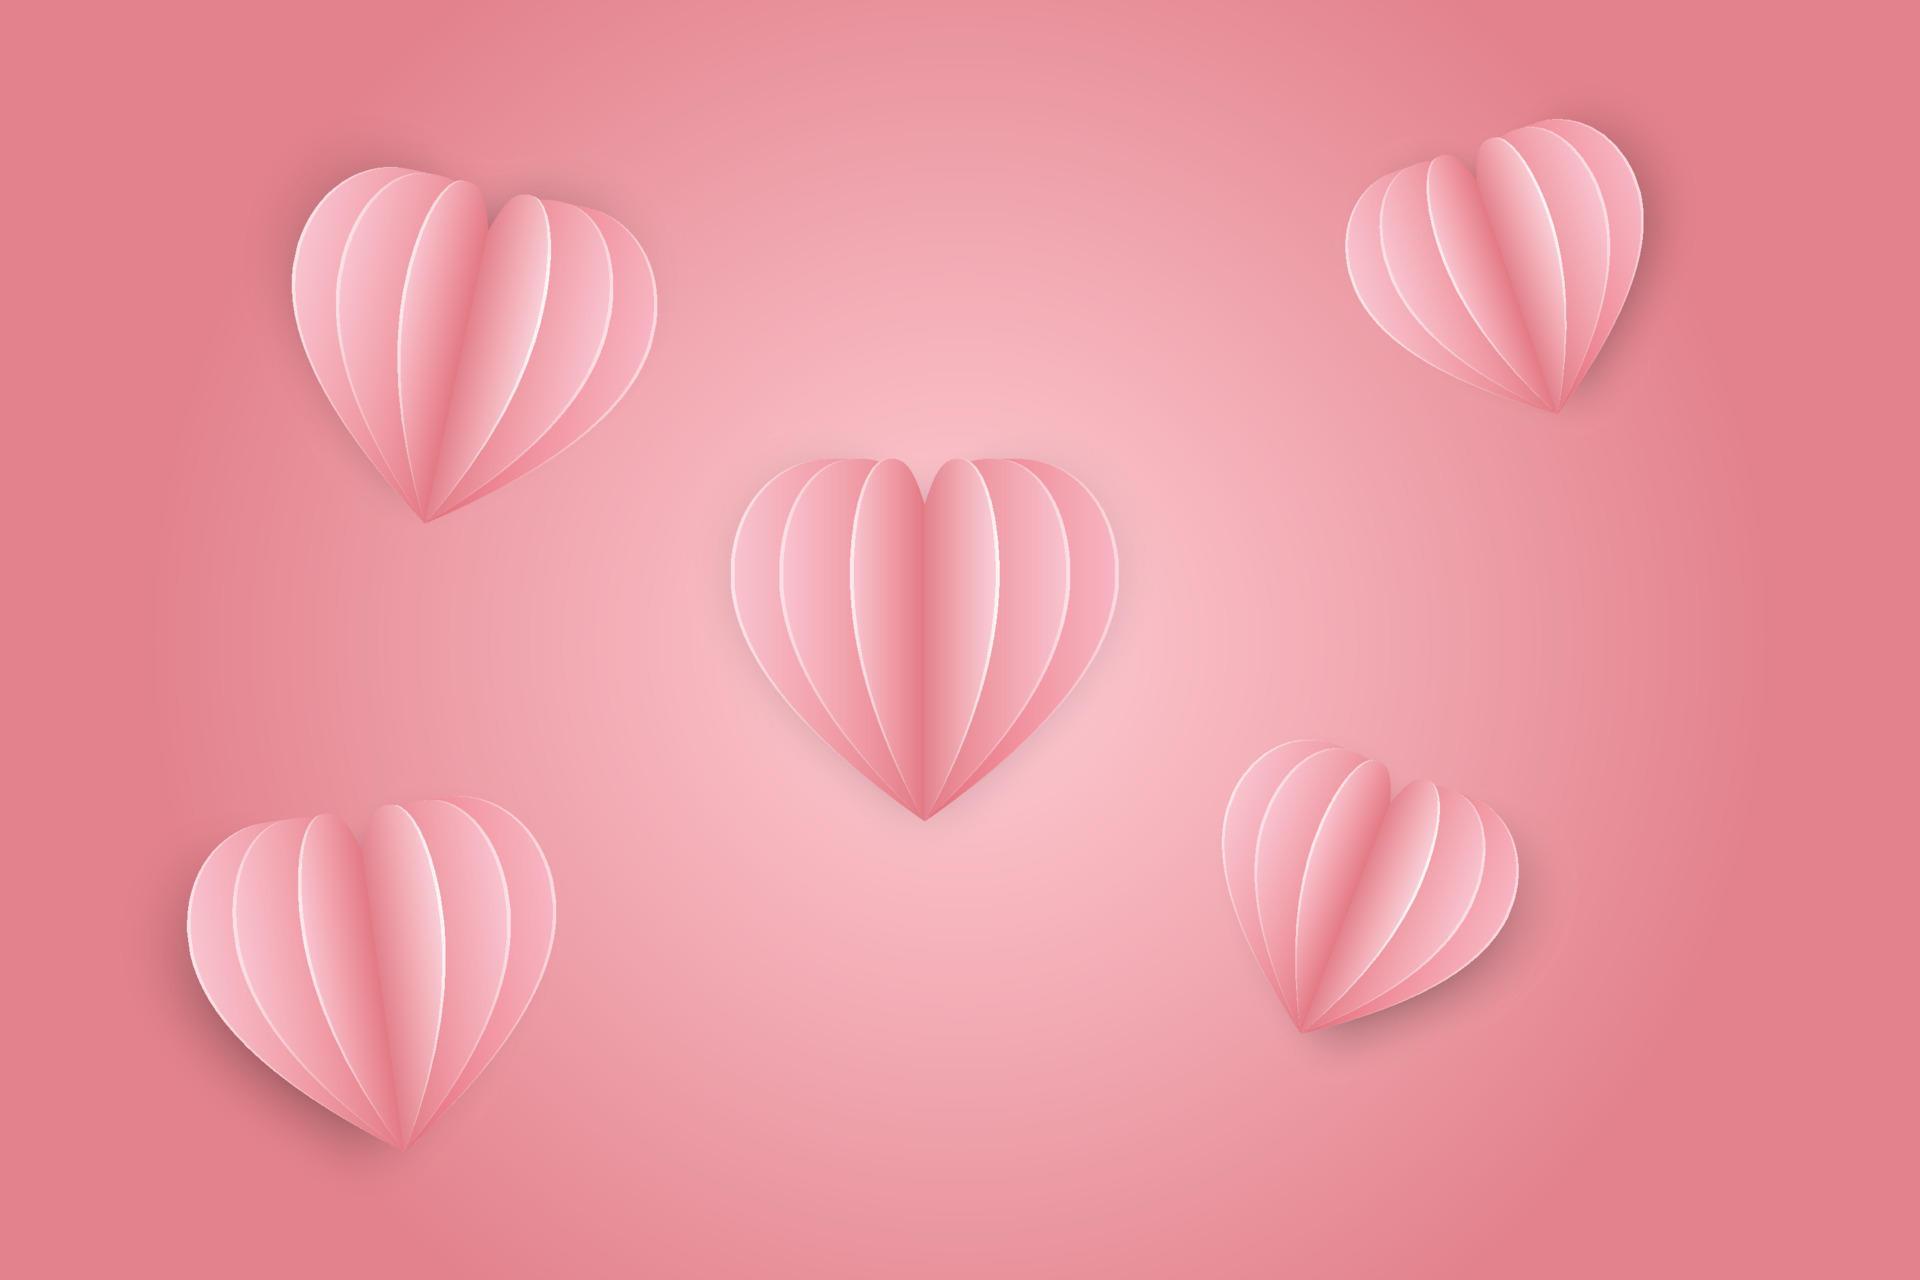 cuore set amore simbolo illustrazioni papercut stile realistico su sfondo rosa vettore